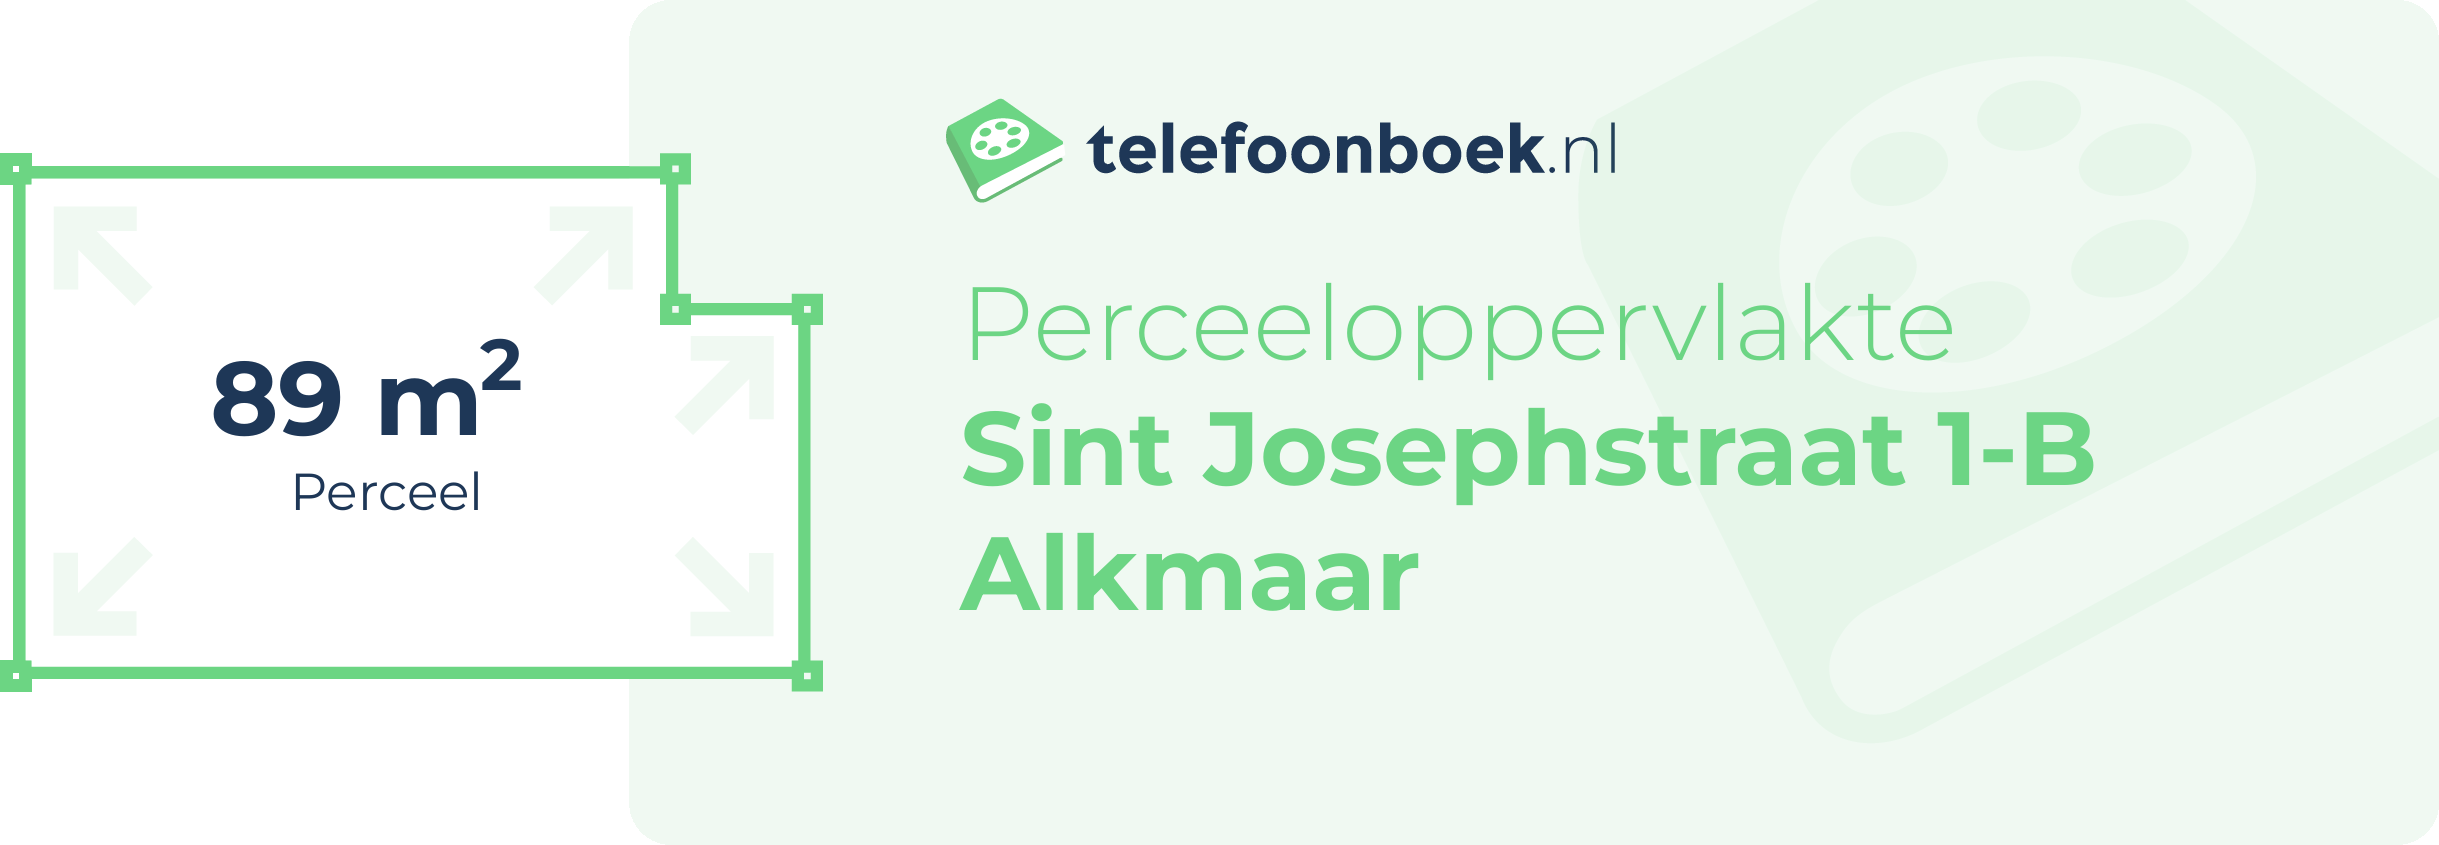 Perceeloppervlakte Sint Josephstraat 1-B Alkmaar